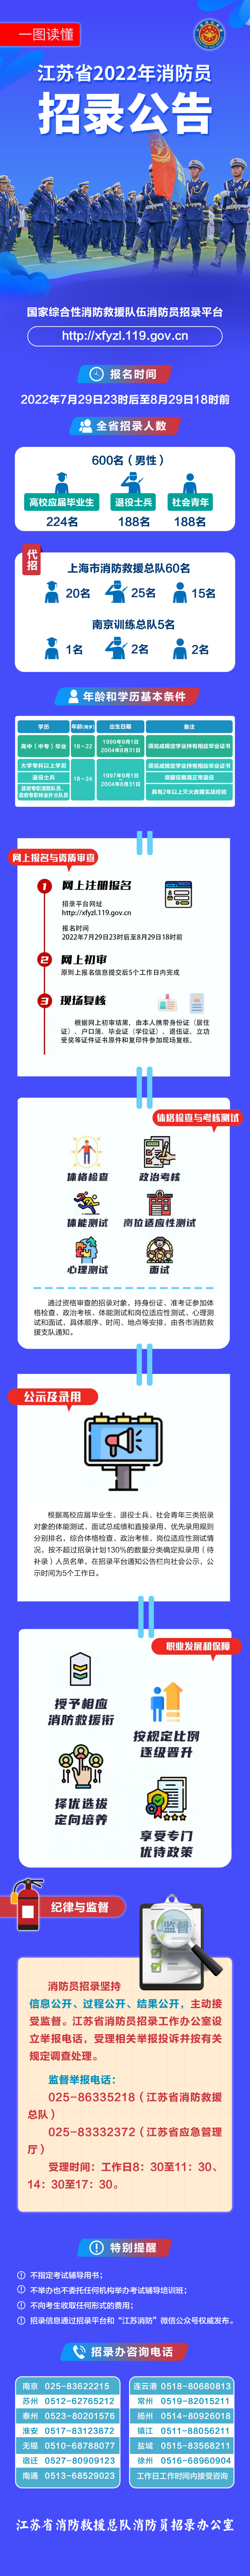 江蘇省國家綜合性消防救援隊伍2022年面向社會招錄消防員的公告